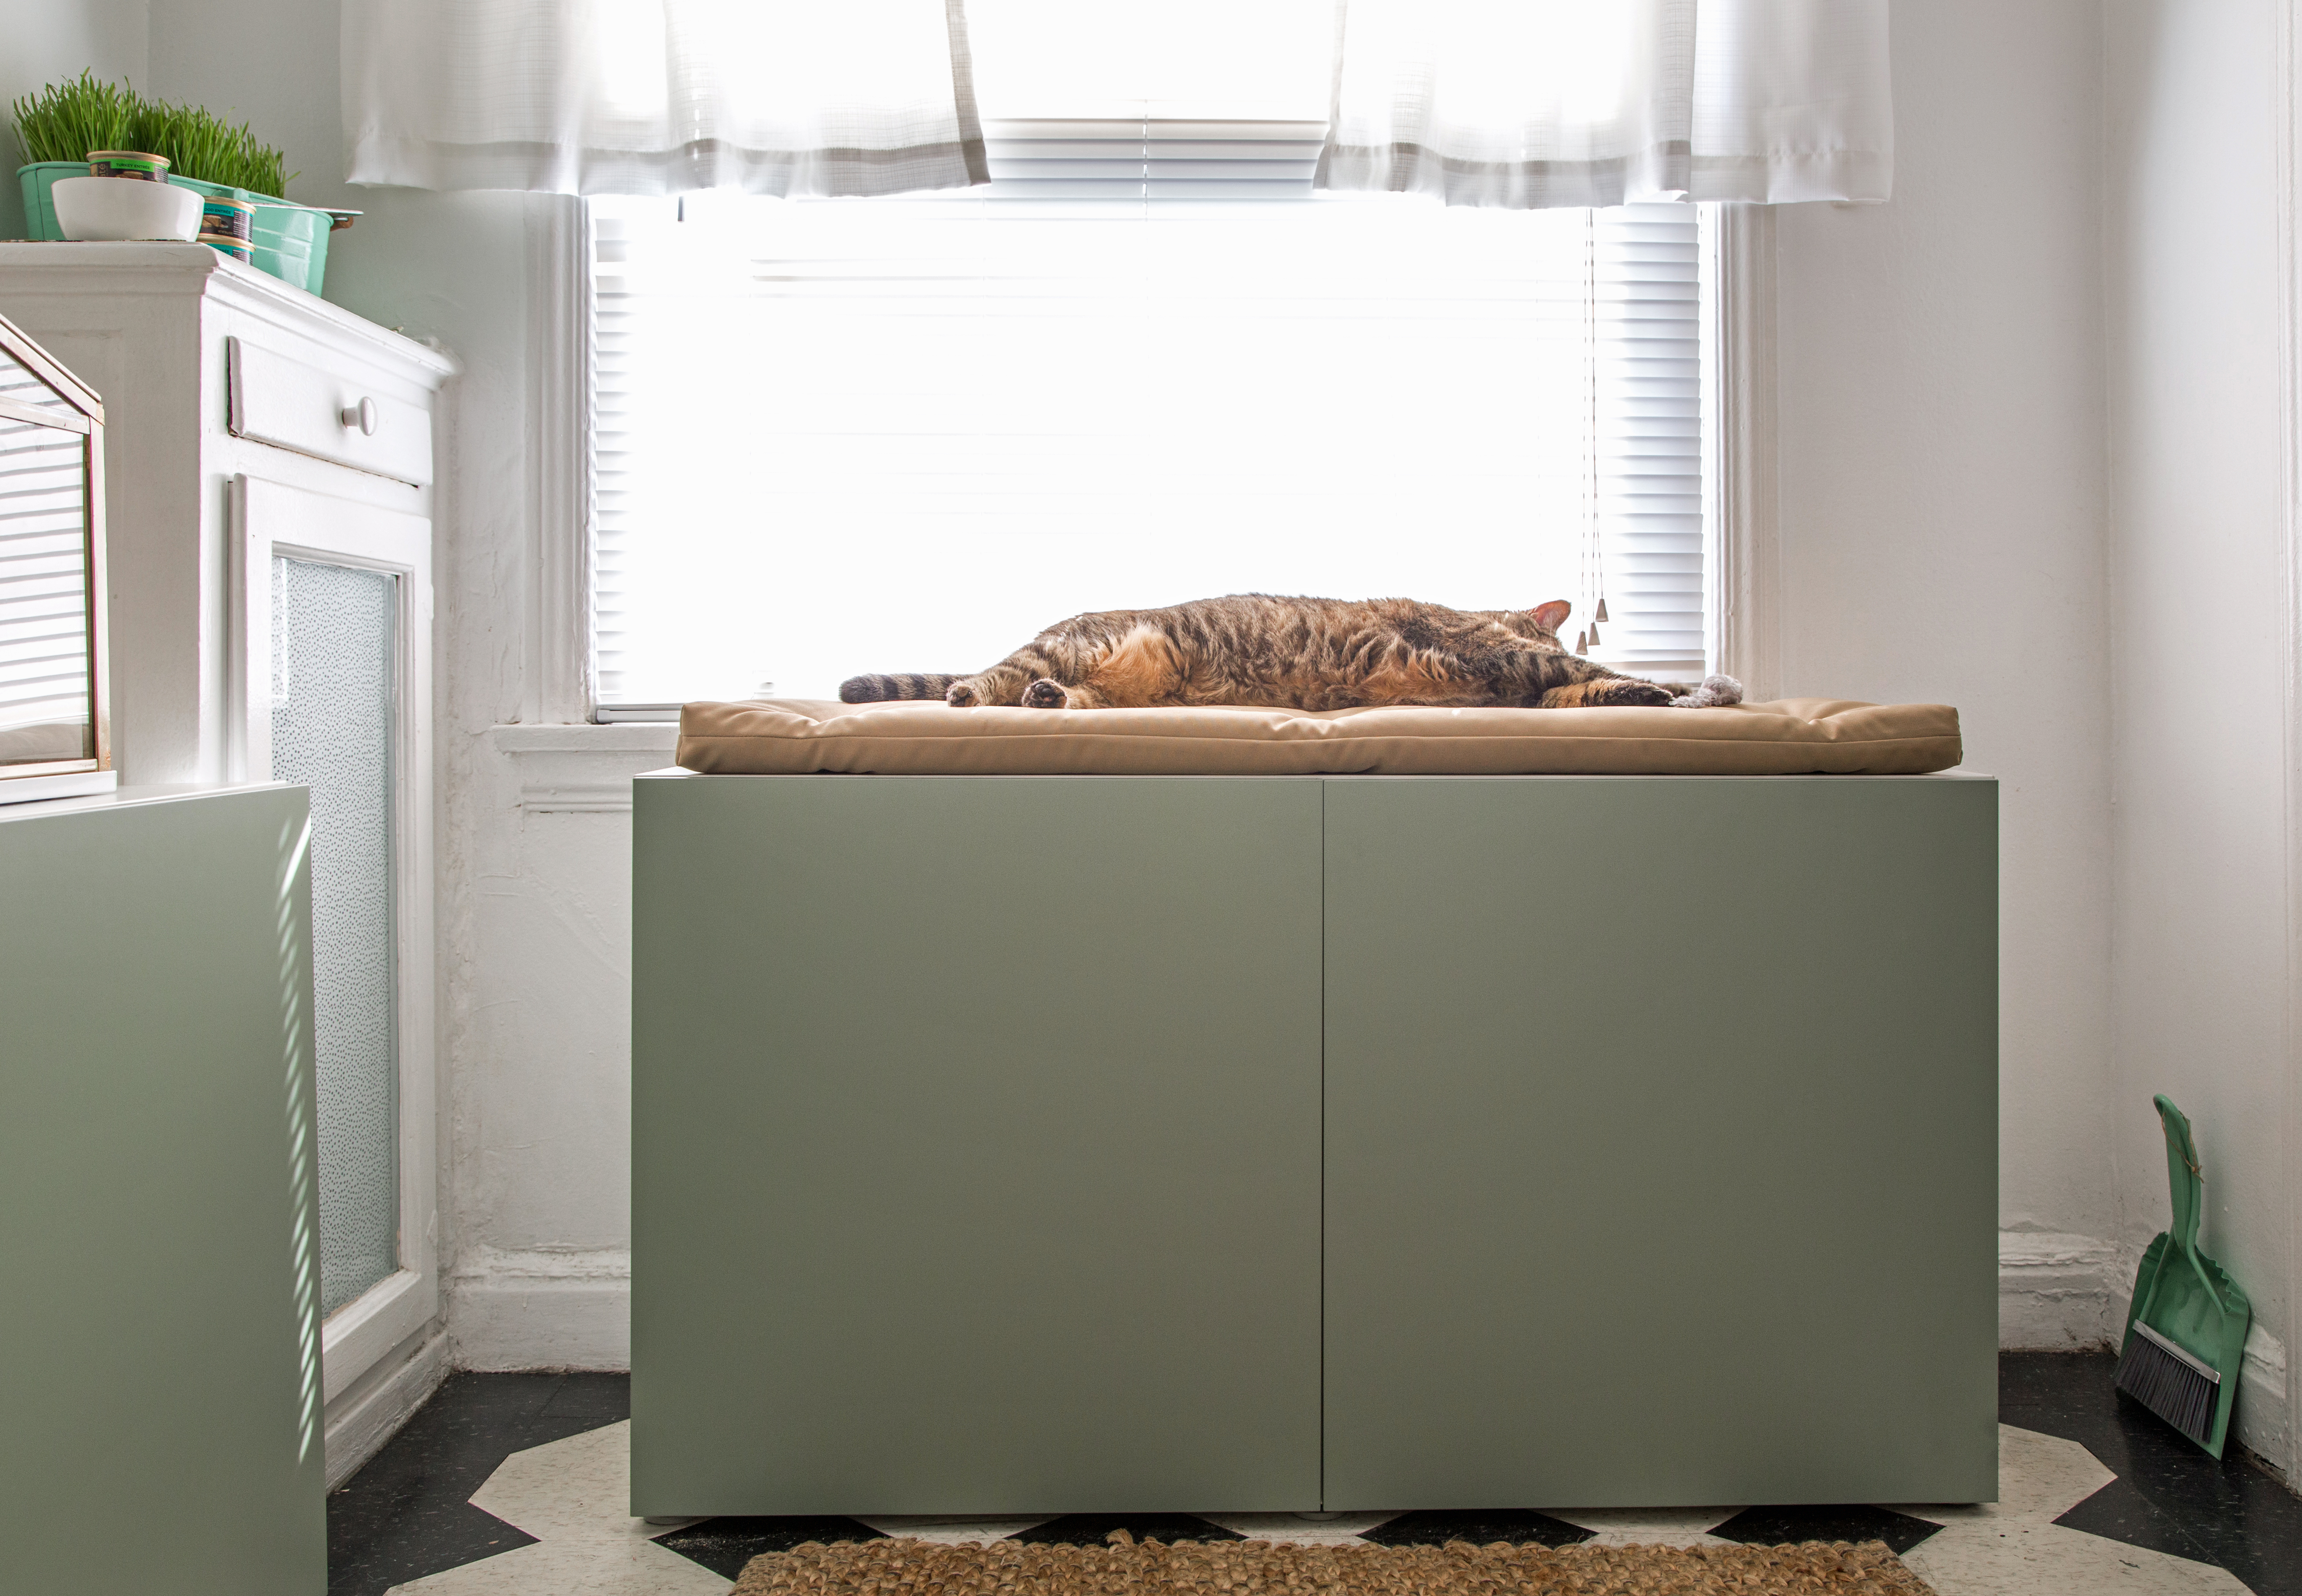 FurHaven Hidden Kitty Litter Box Cat Furniture Enclosure 